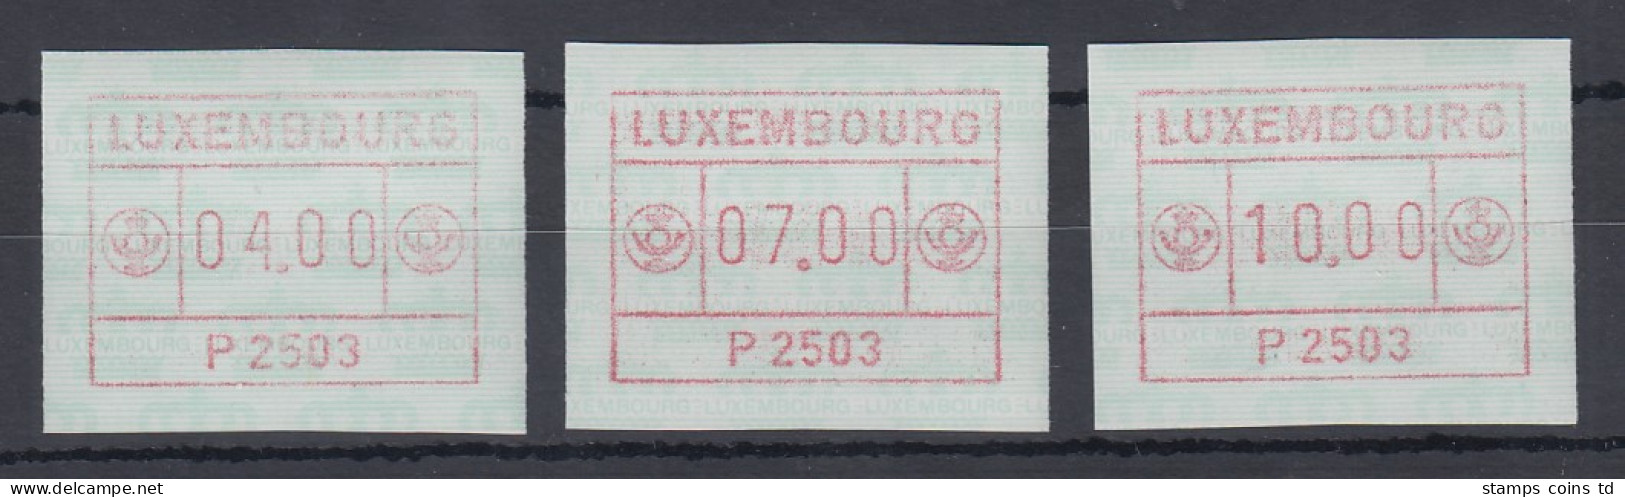 Luxemburg ATM P2503 Tastensatz 4-7-10 ** - Postage Labels